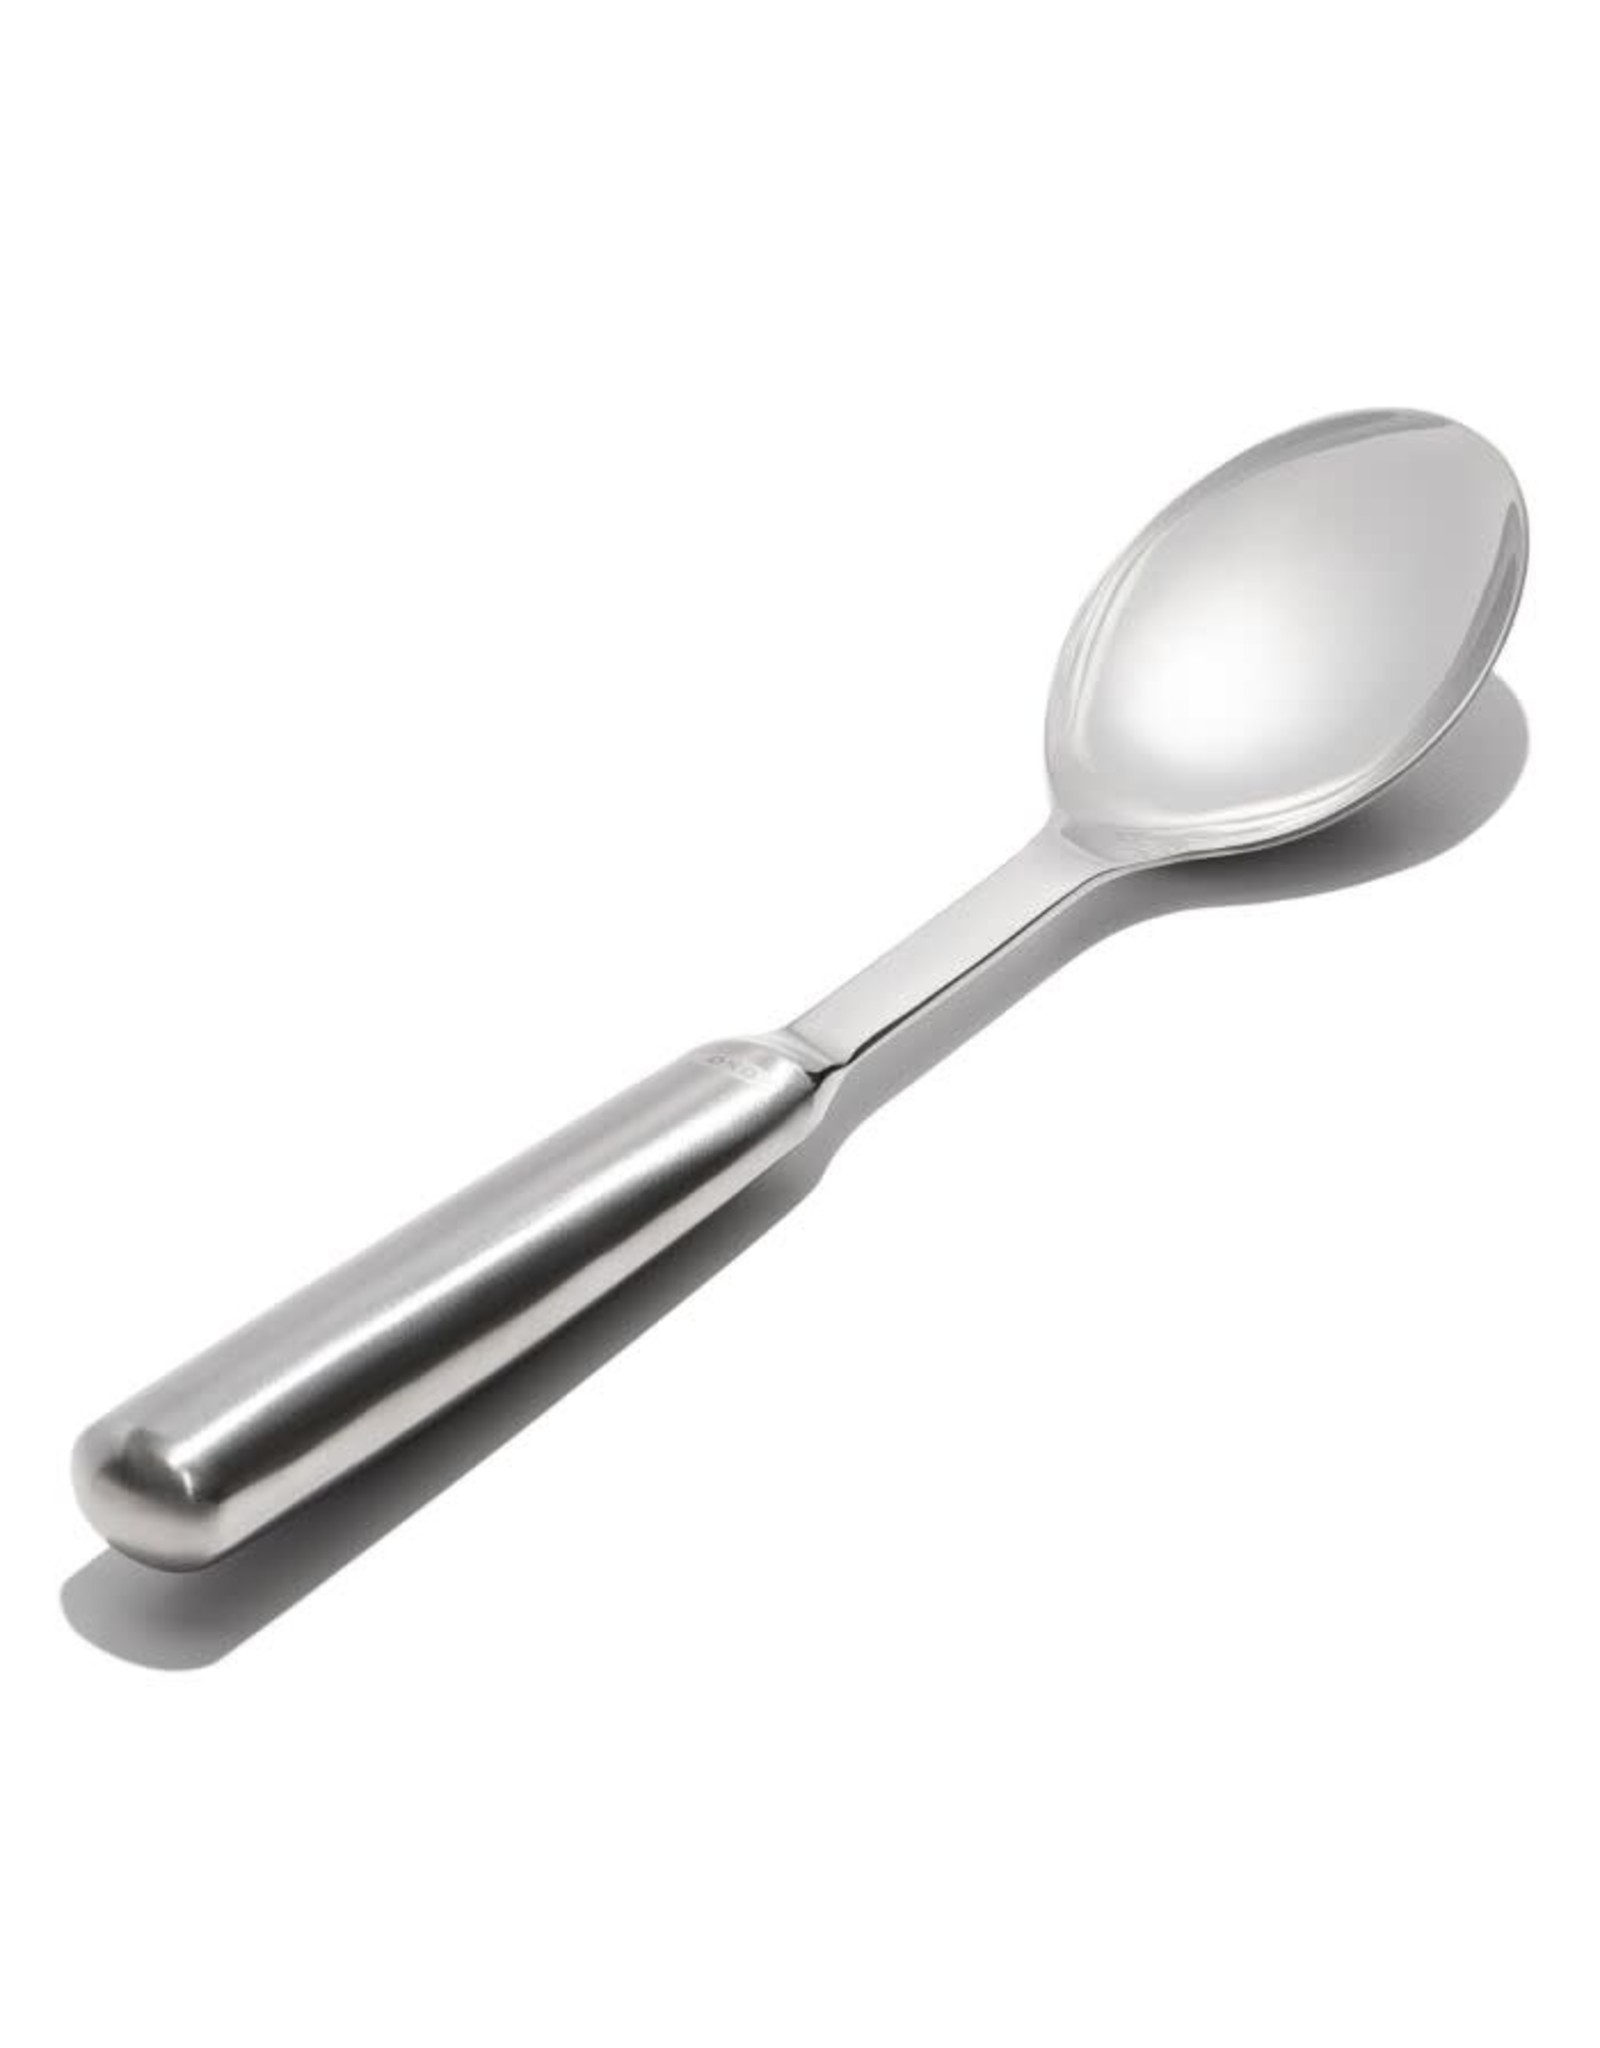 https://cdn.shoplightspeed.com/shops/635781/files/50626425/1600x2048x2/oxo-oxo-steel-serving-spoon.jpg